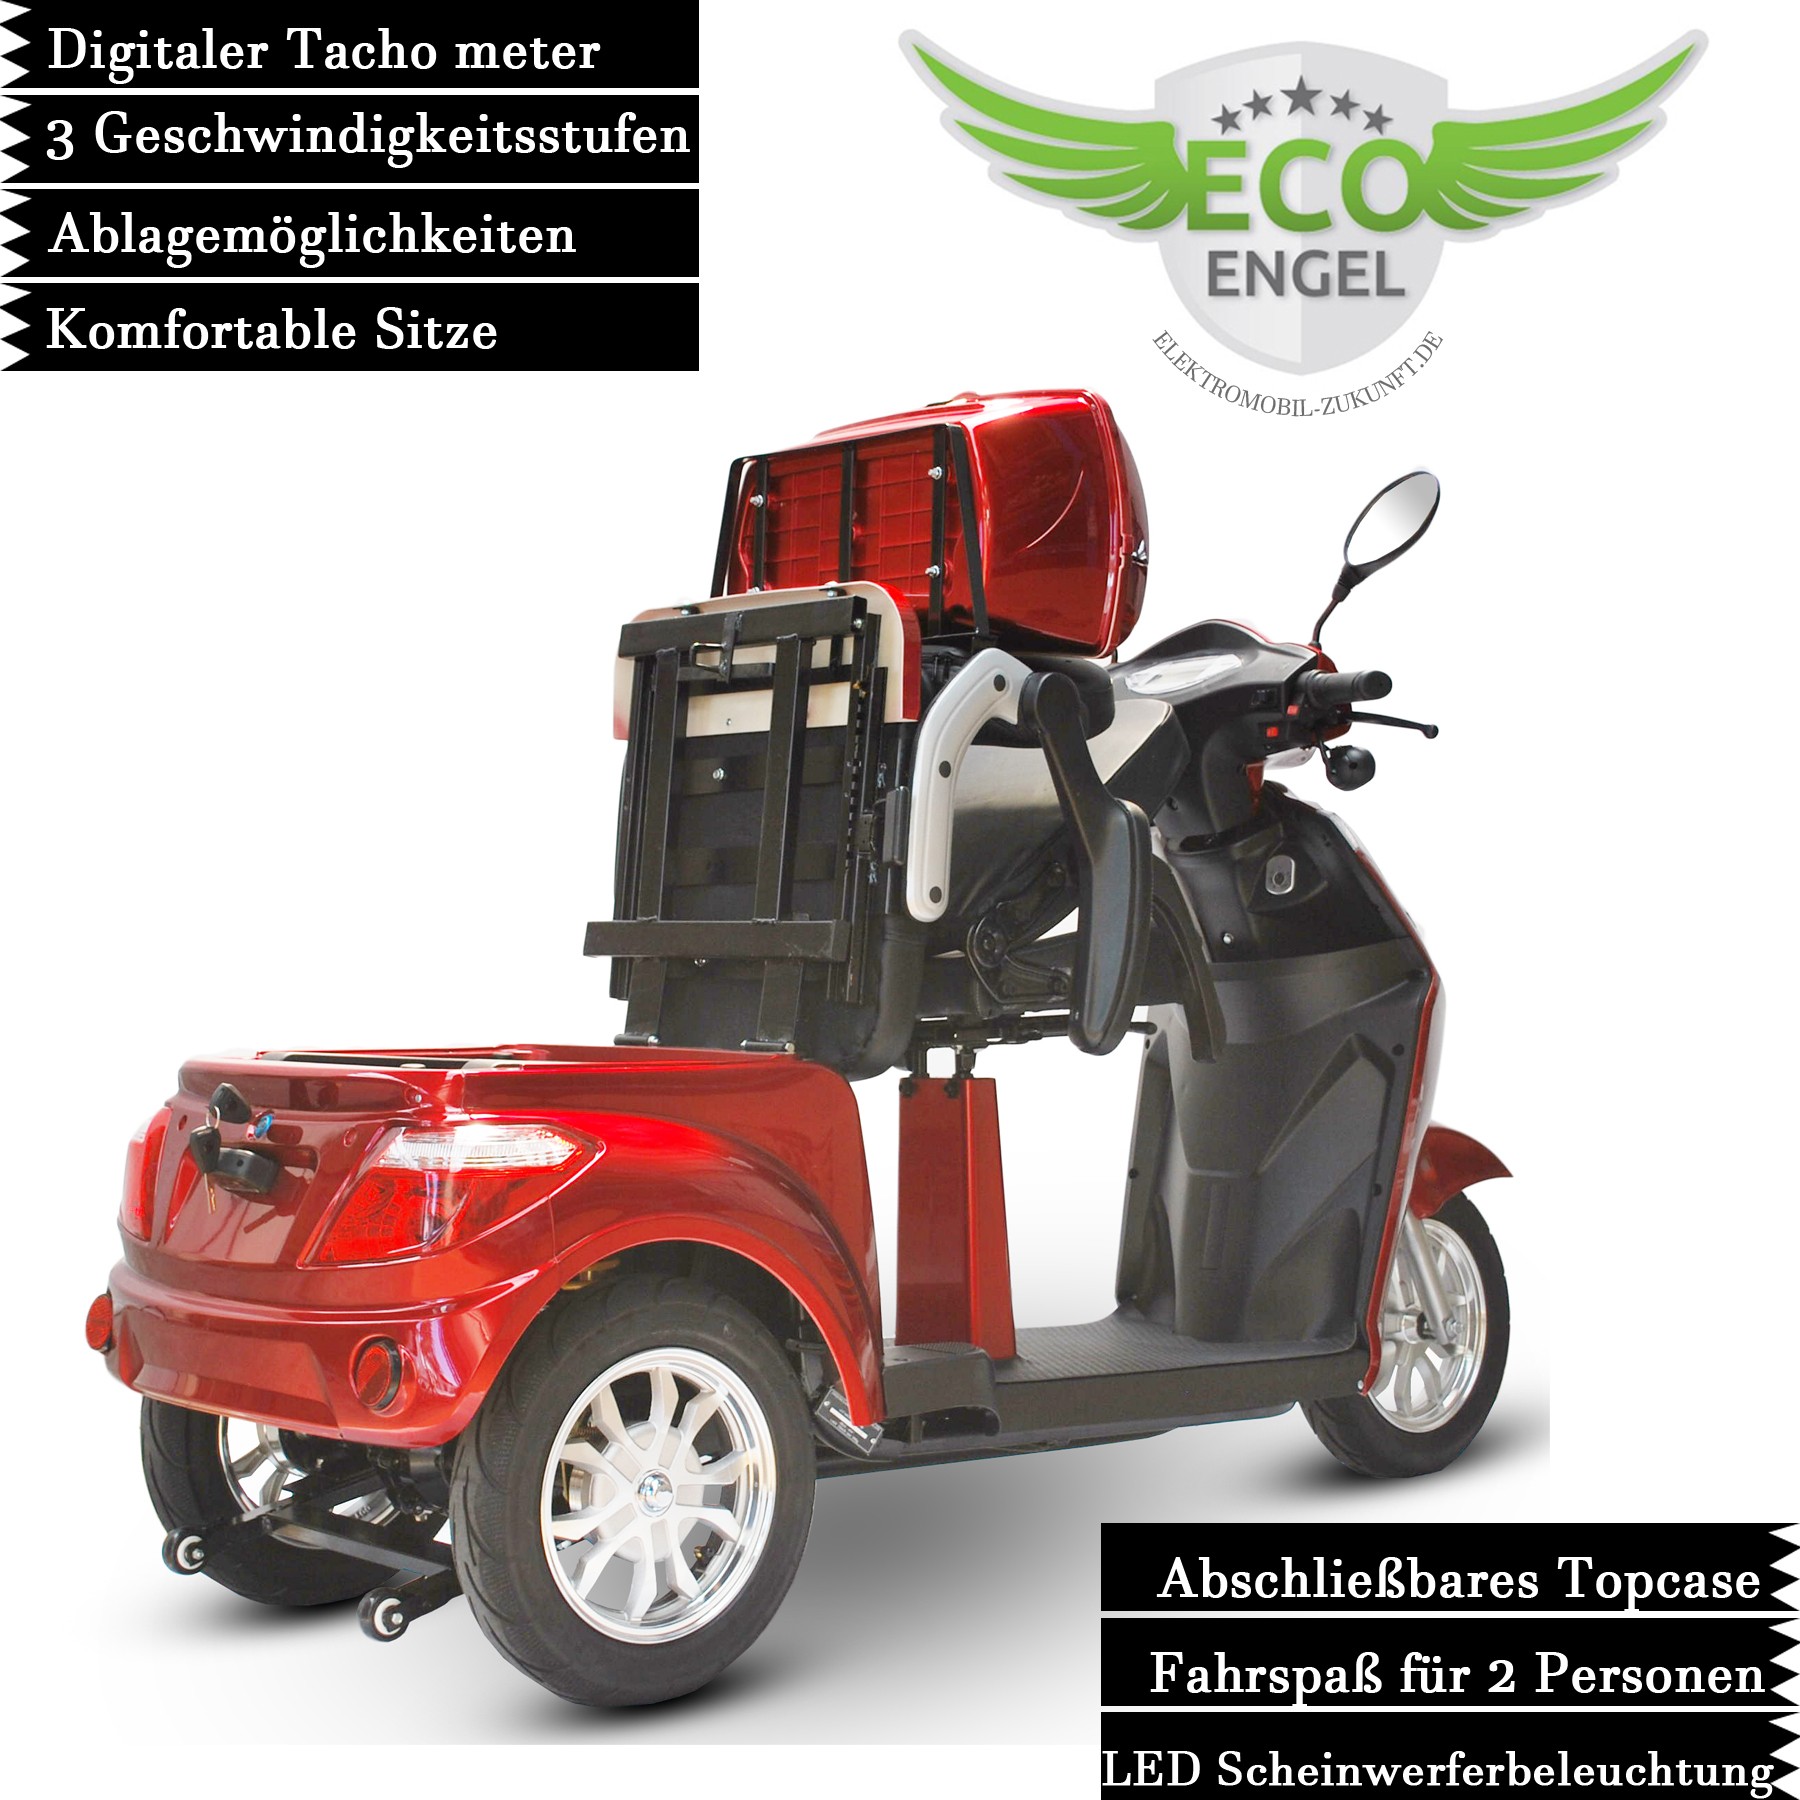 Scooter Electro-fun ECO Seniorenmobil ENGEL, von Elektro